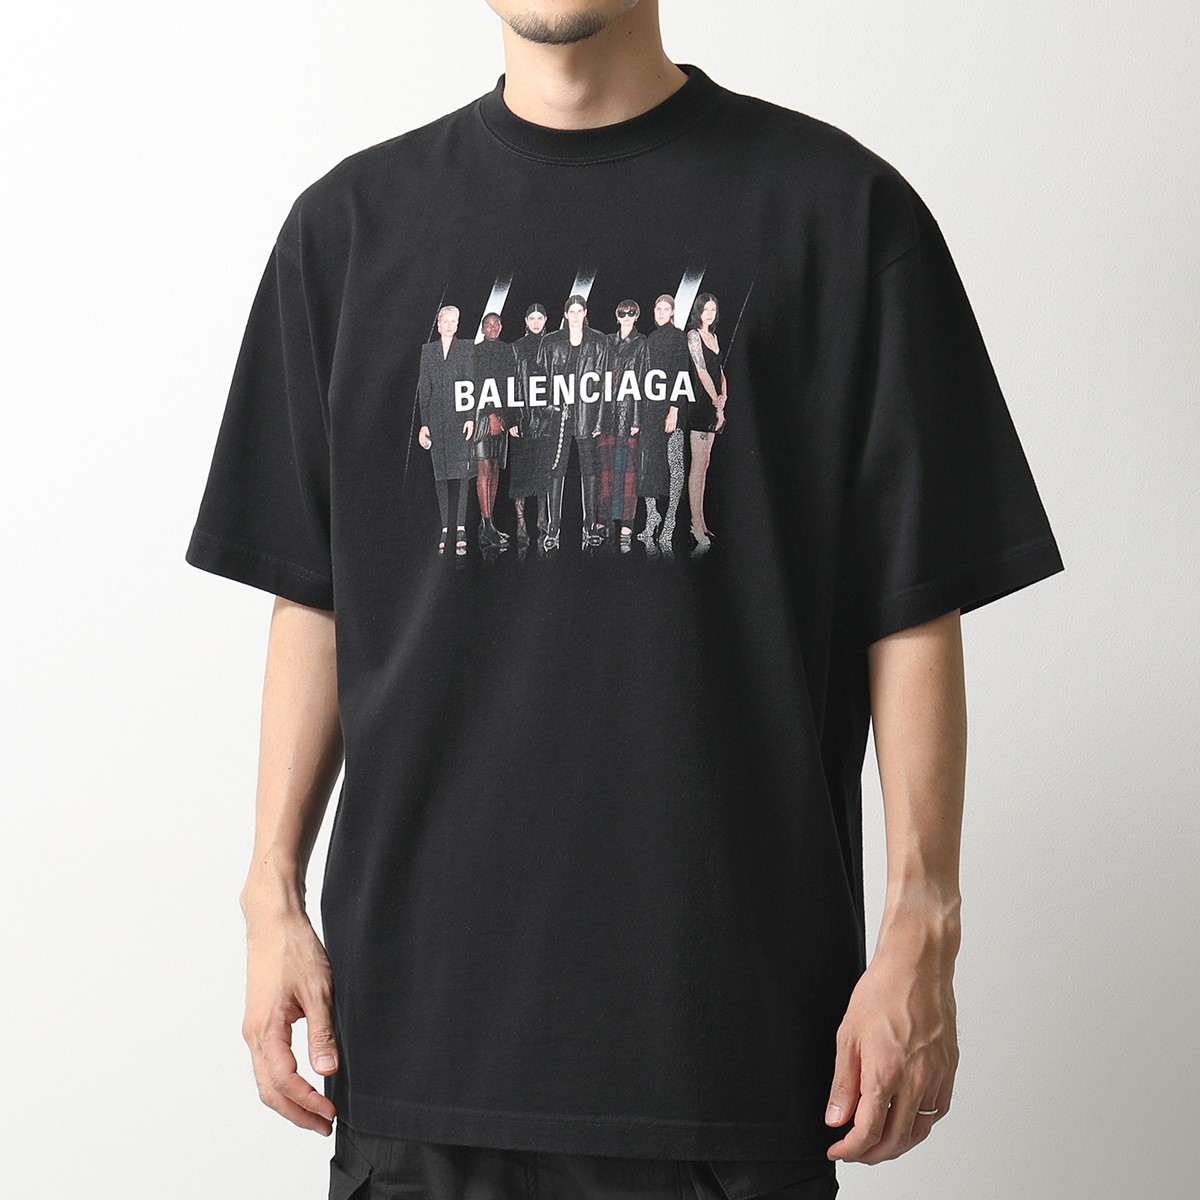 BALENCIAGA バレンシアガ 620969 TIVA1 オーバーサイズ クルーネック 半袖Tシャツ カットソー ロゴT 1000 メンズ |  インポートセレクト musee